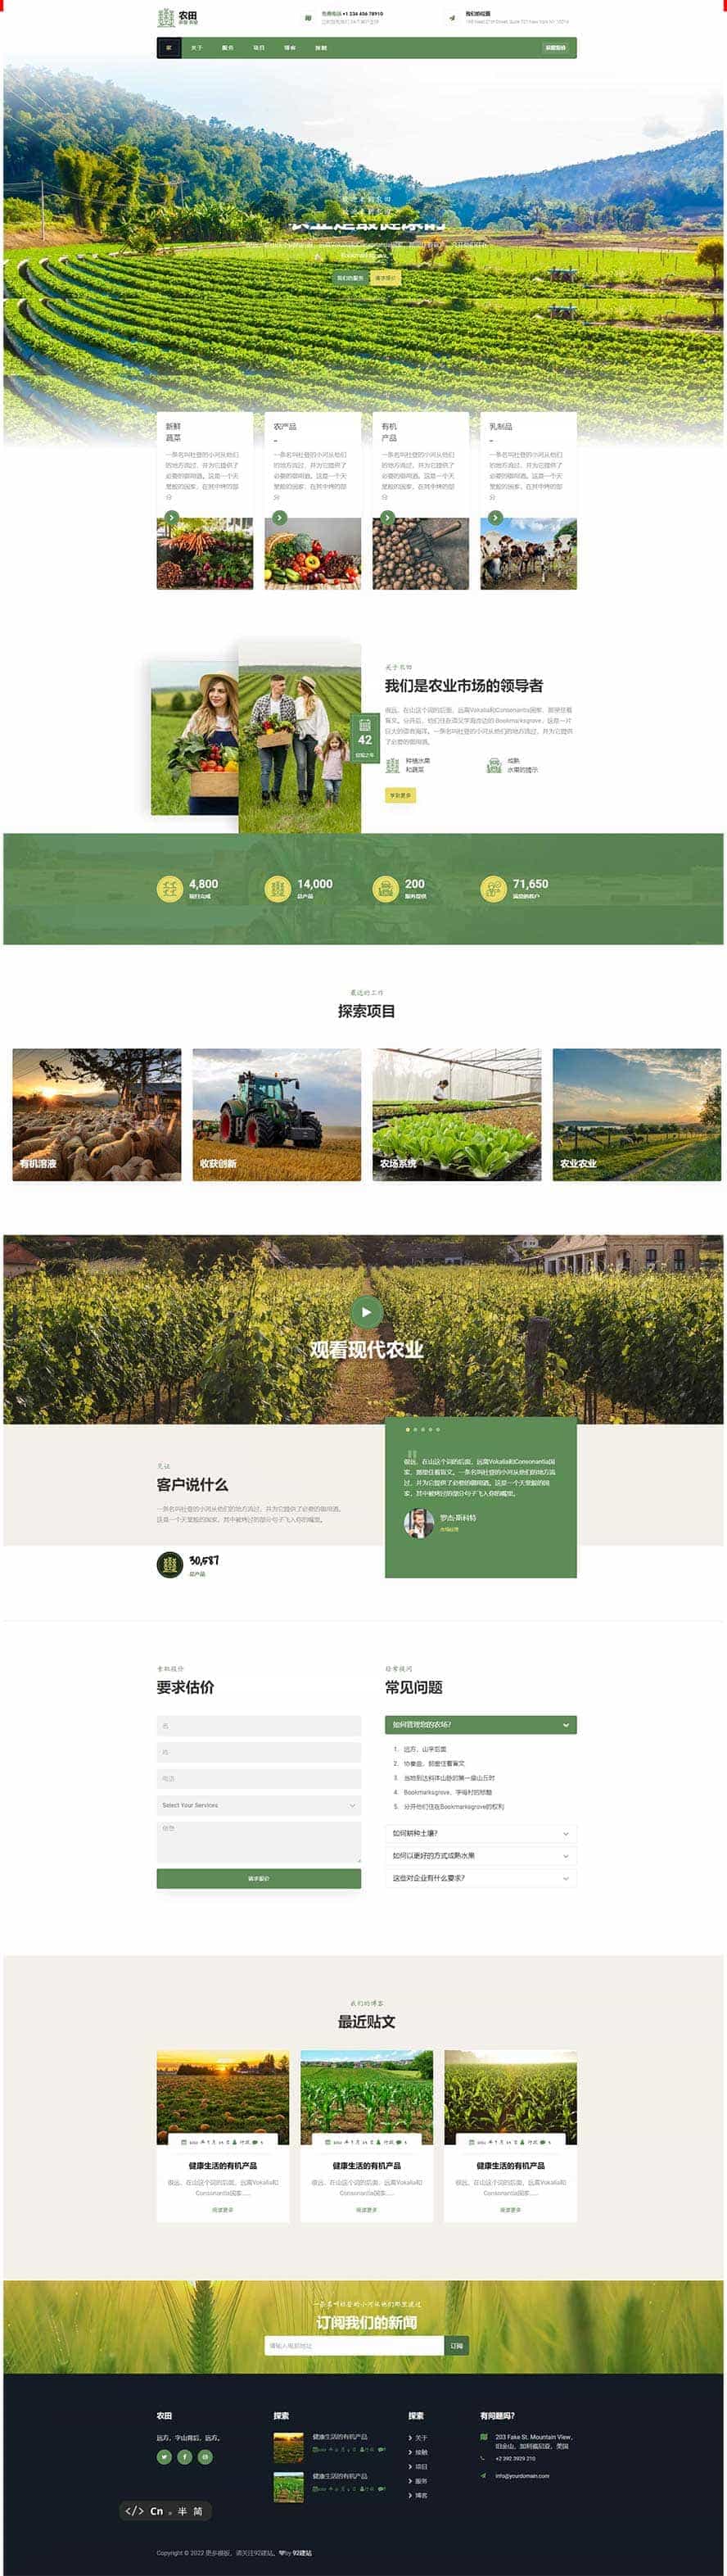 农业网页模板,科技网页模板,项目网页模板